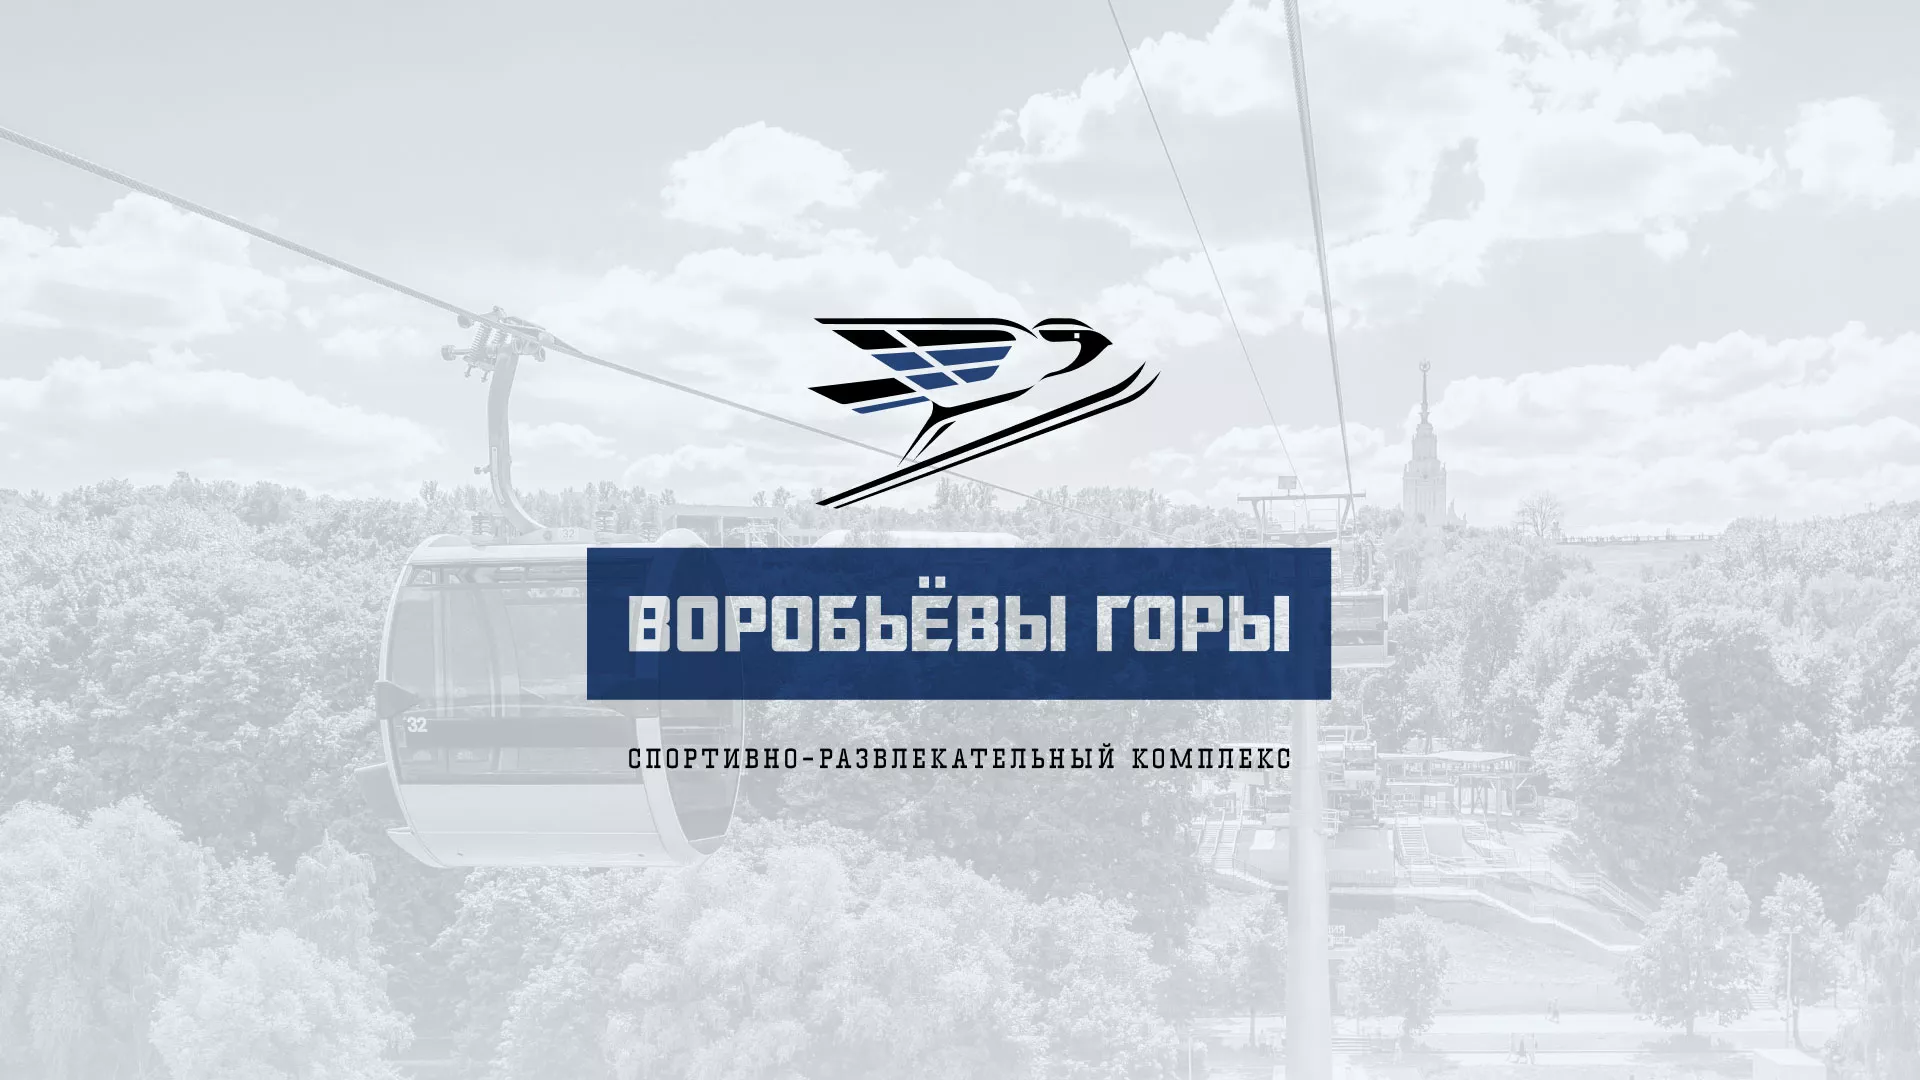 Разработка сайта в Петергофе для спортивно-развлекательного комплекса «Воробьёвы горы»